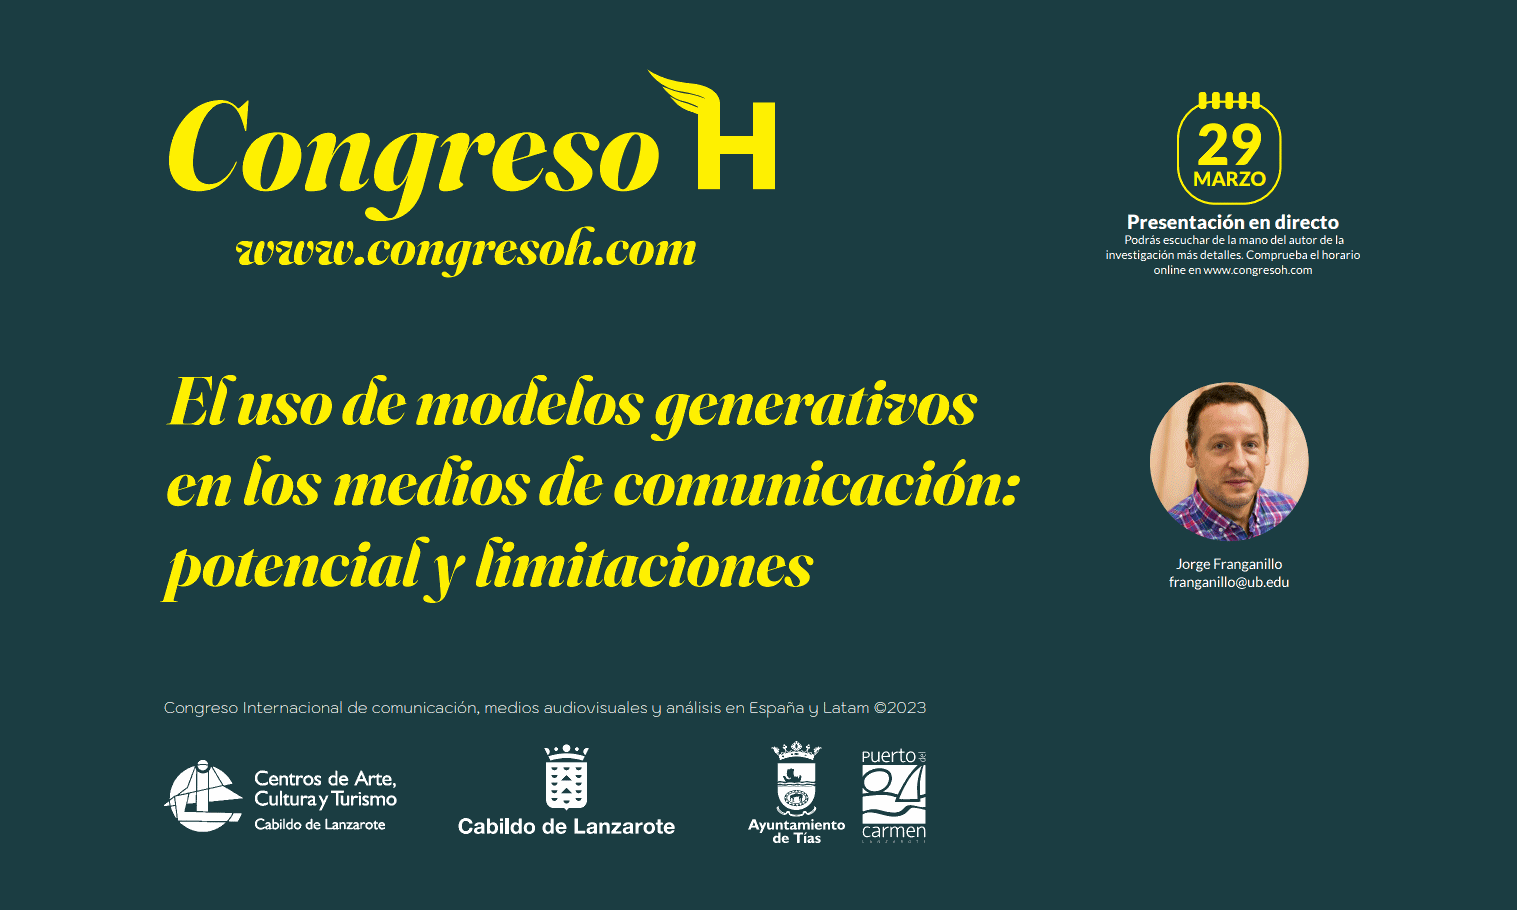 III Congreso Internacional de Comunicación y Medios Audiovisuales en España y Latinoamérica